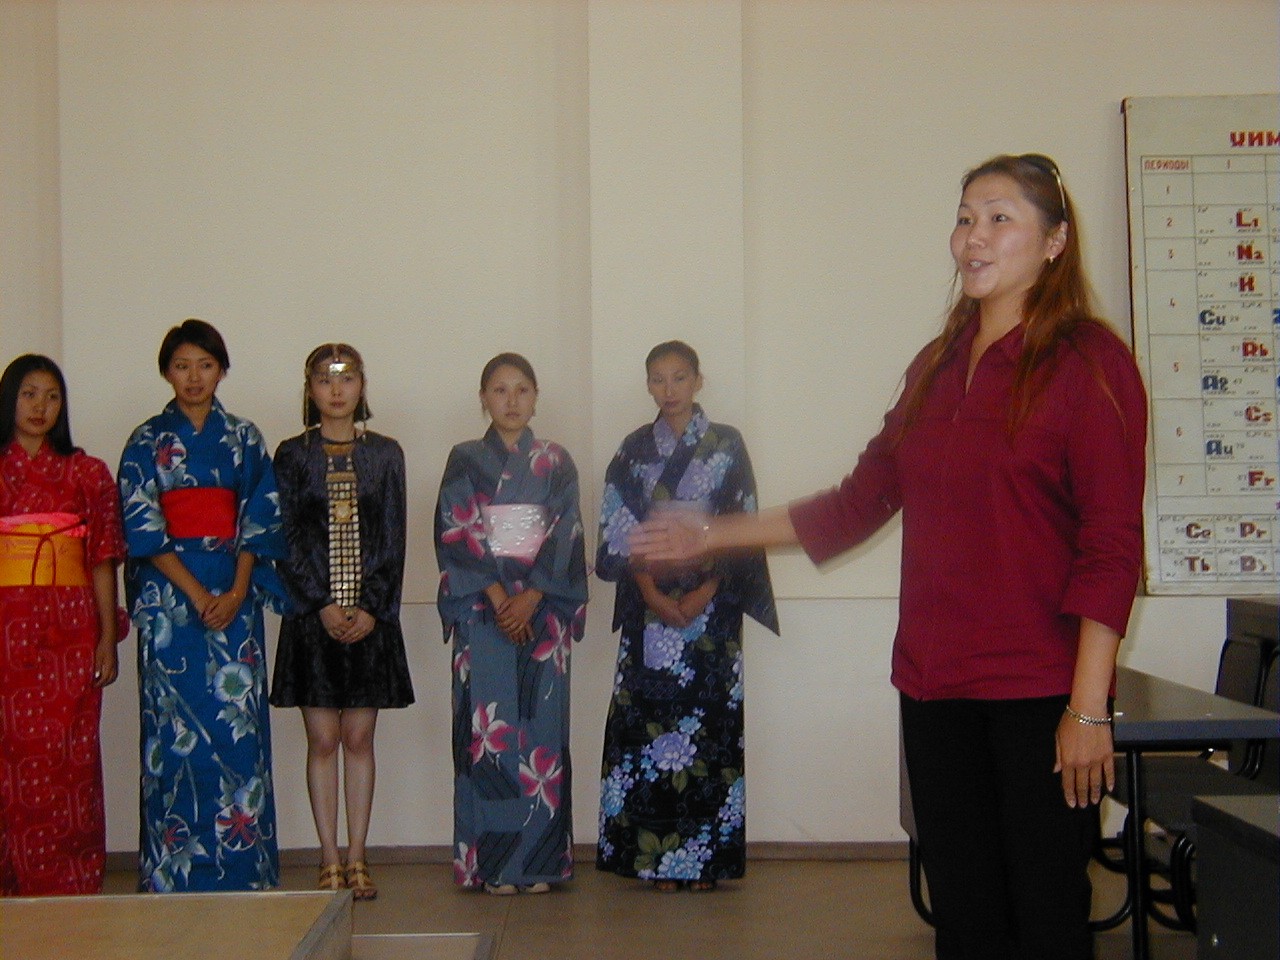 Японская делегация в Хангаласском улусе. Август 2001 года